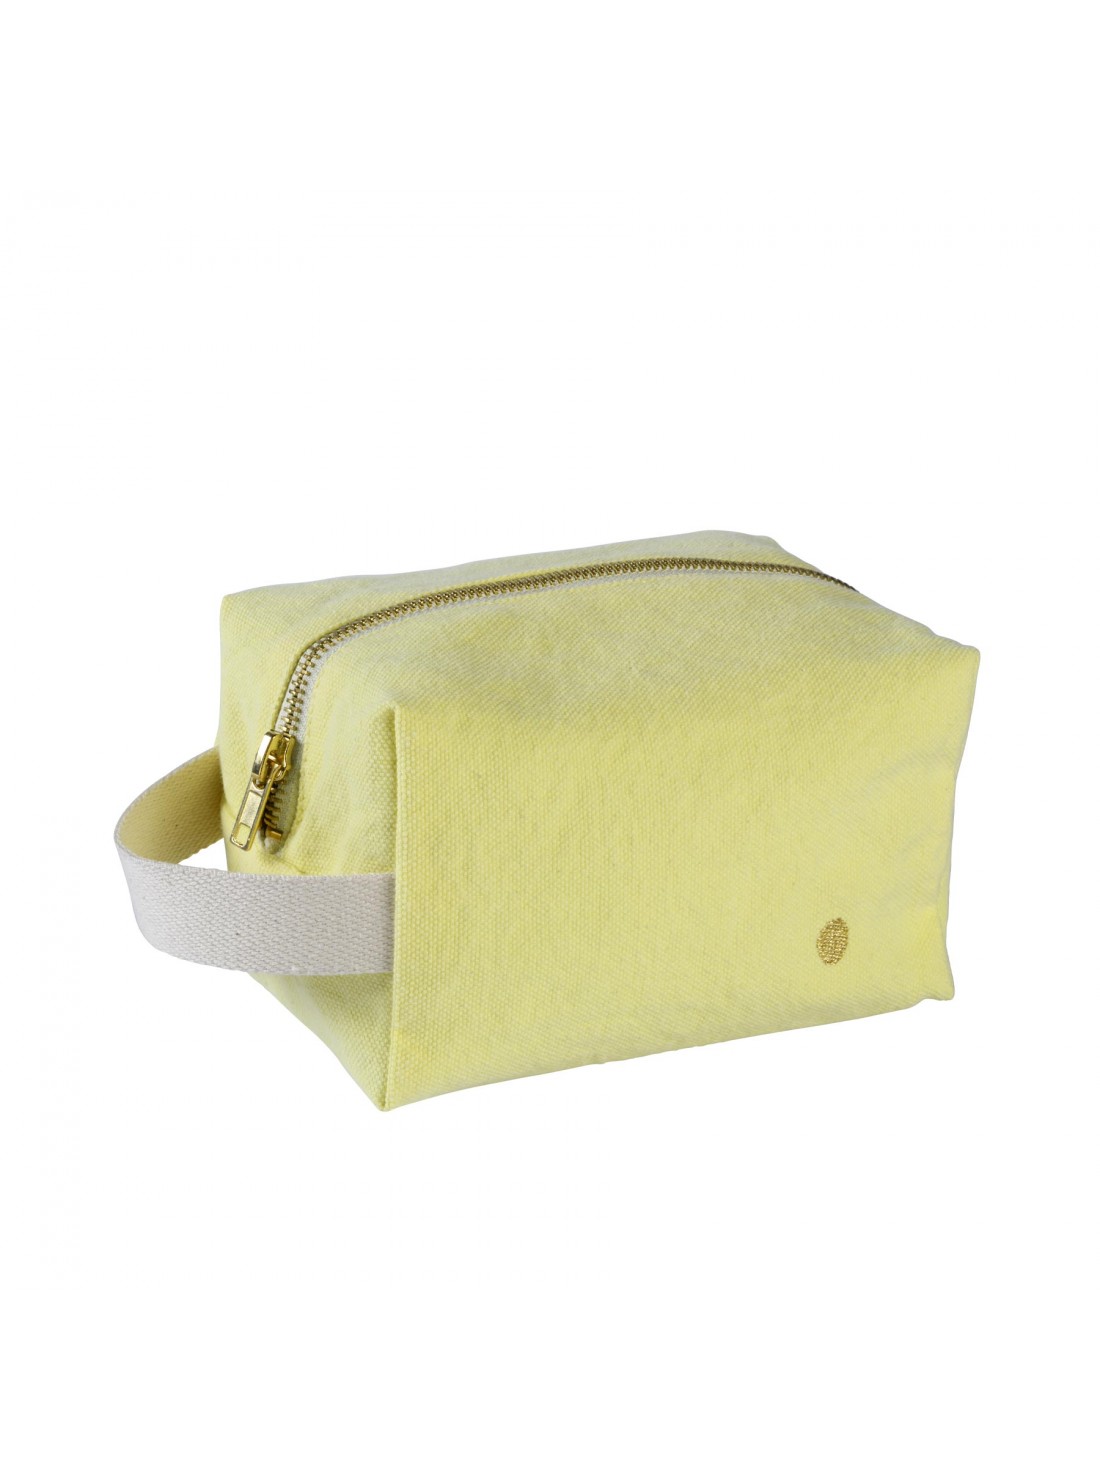 Trousse cube petit modèle Jaune sunshine coton bio déperlant * La Cerise sur le Gâteau